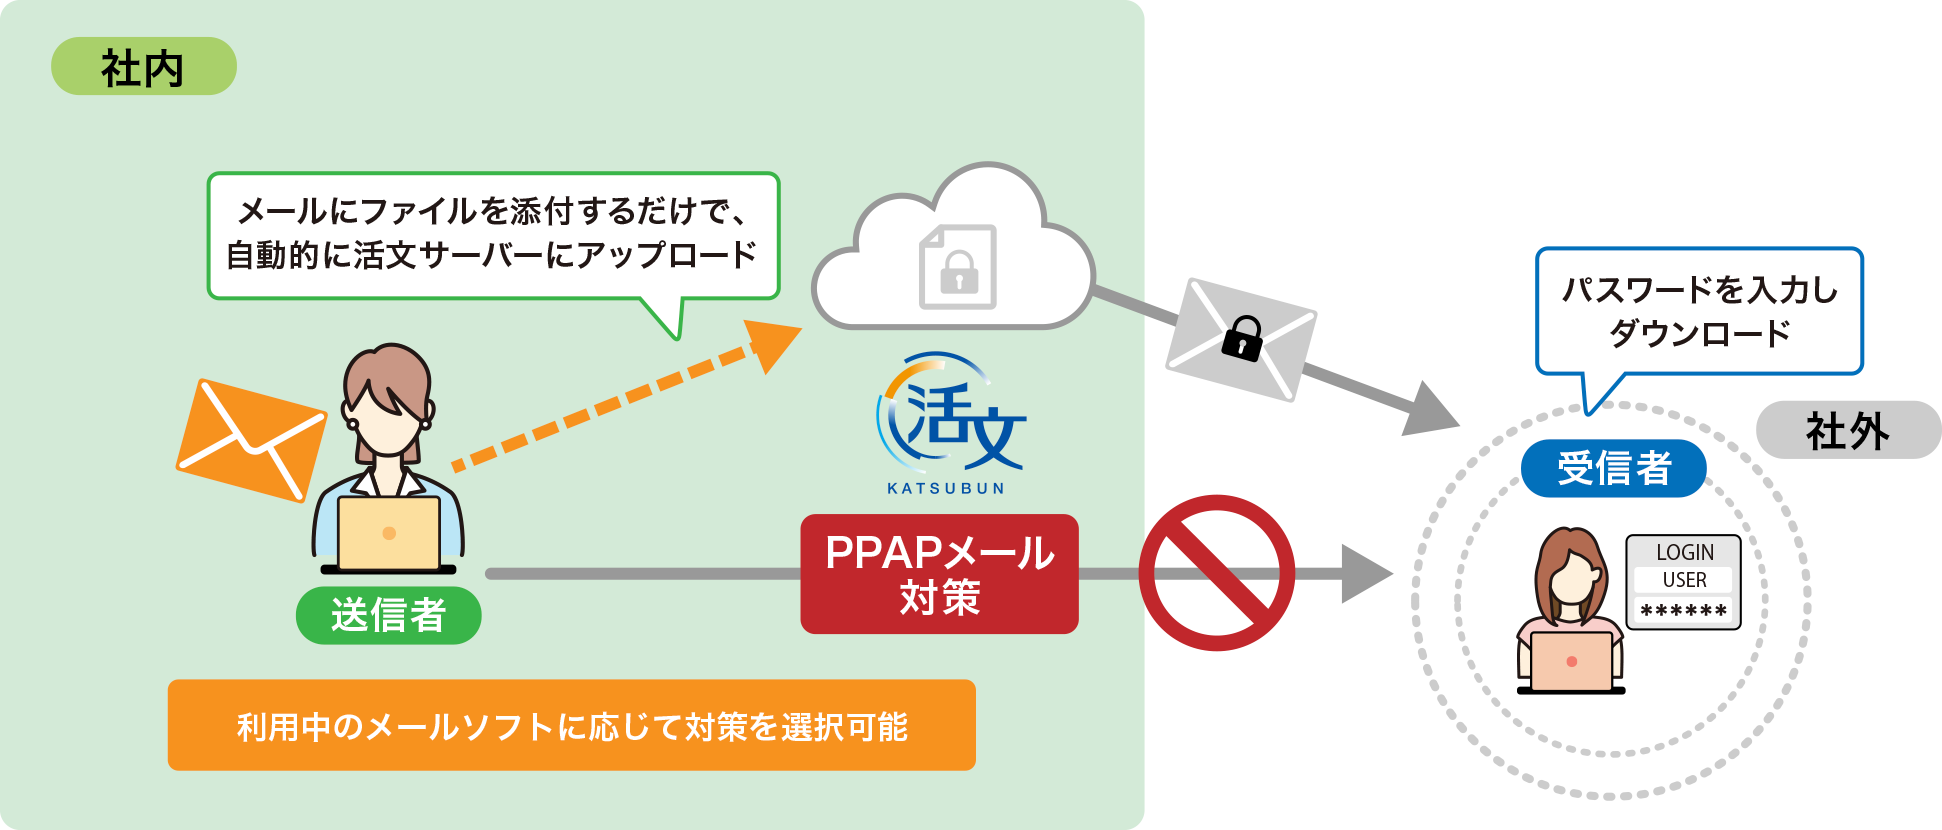 PPAPメール送信時のセキュリティ対策を強化 のイメージ